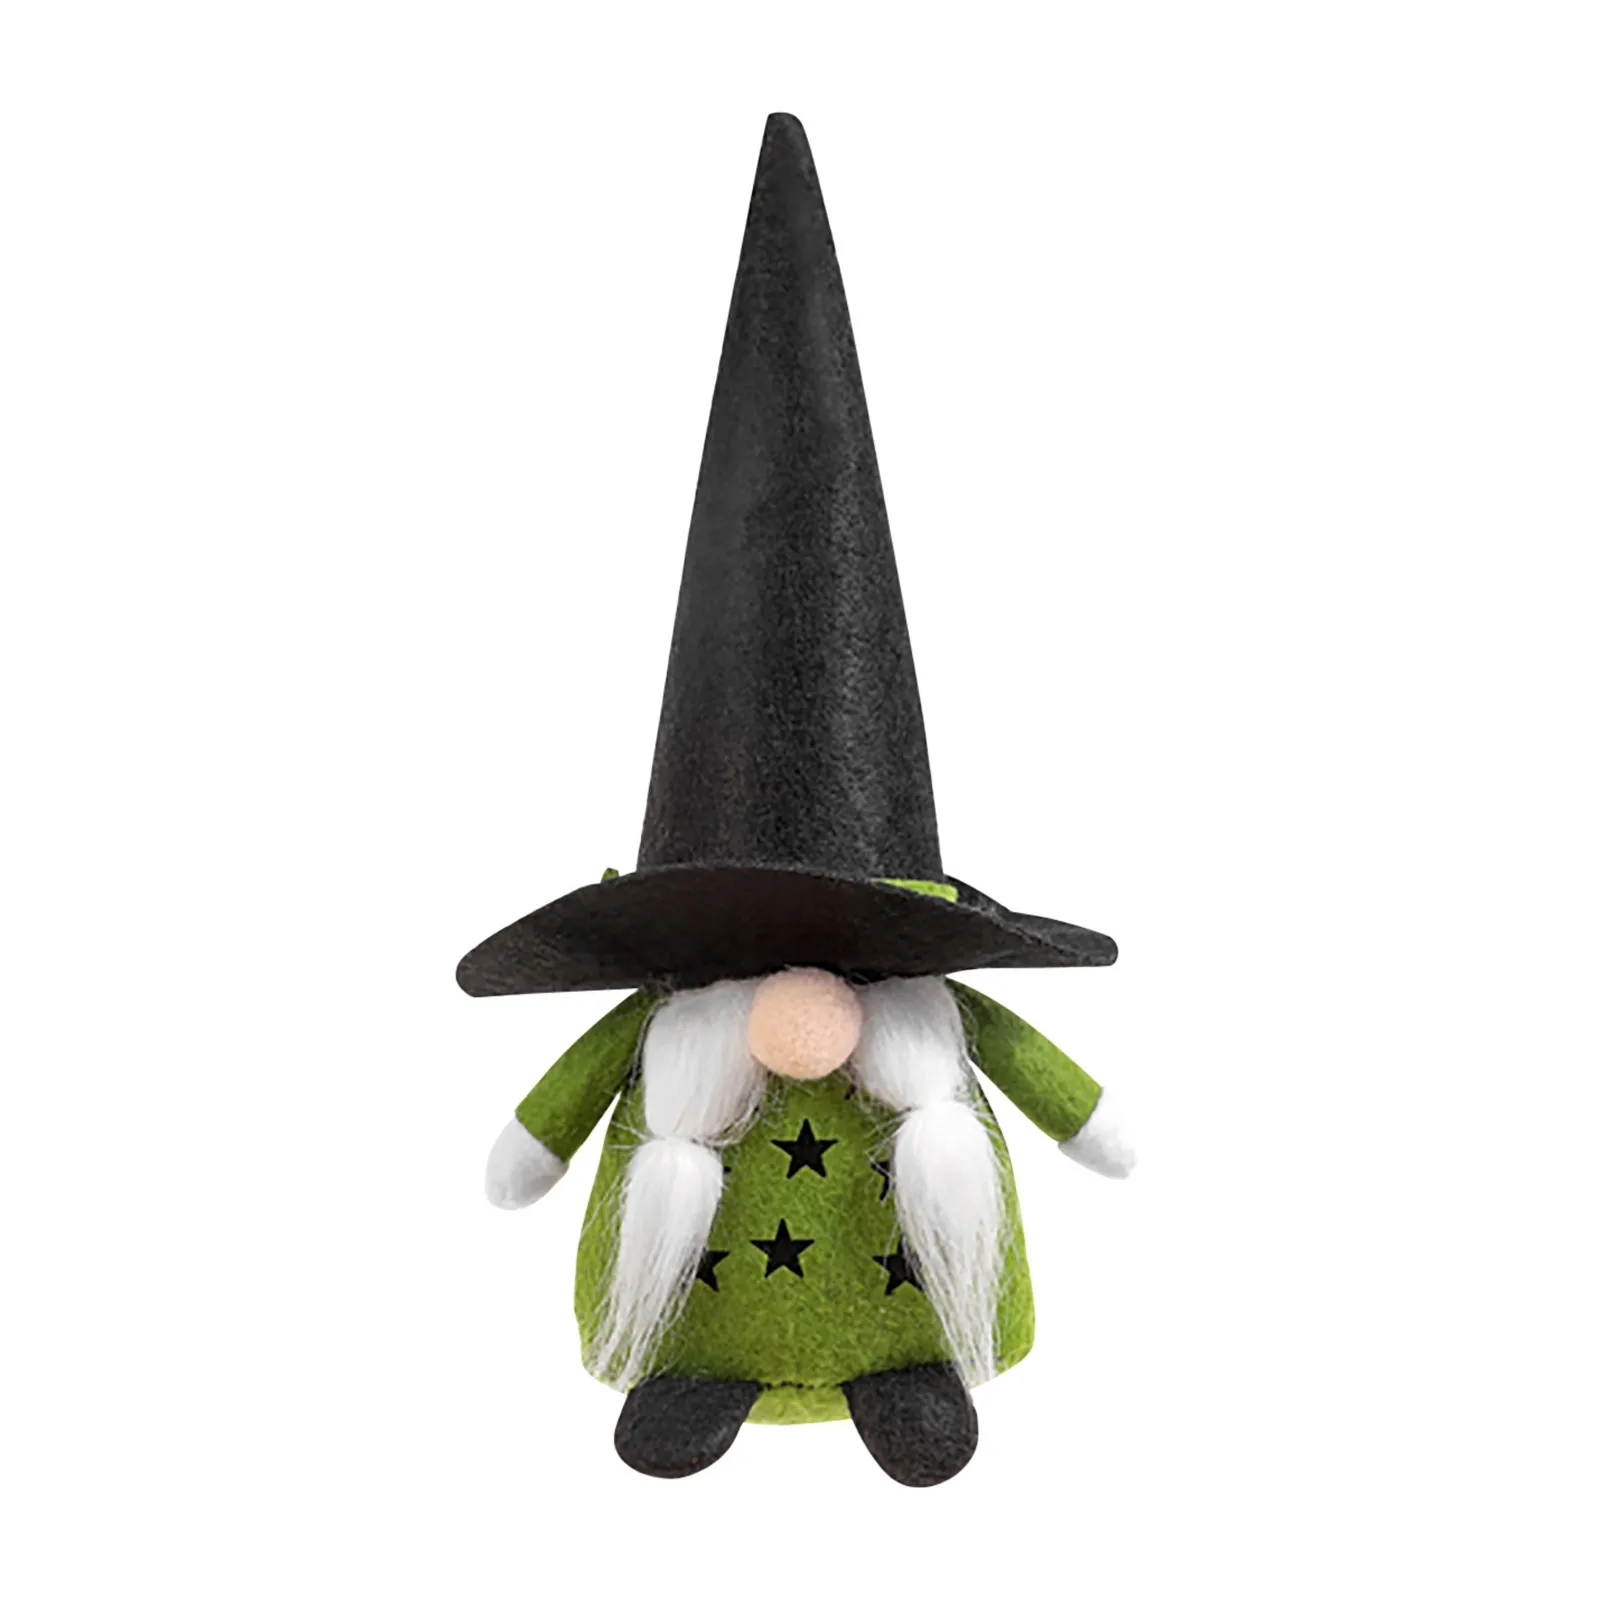 Шляпа гнома. Гном и звезда. Witeh Halloween шапка. H Halloween chizish.